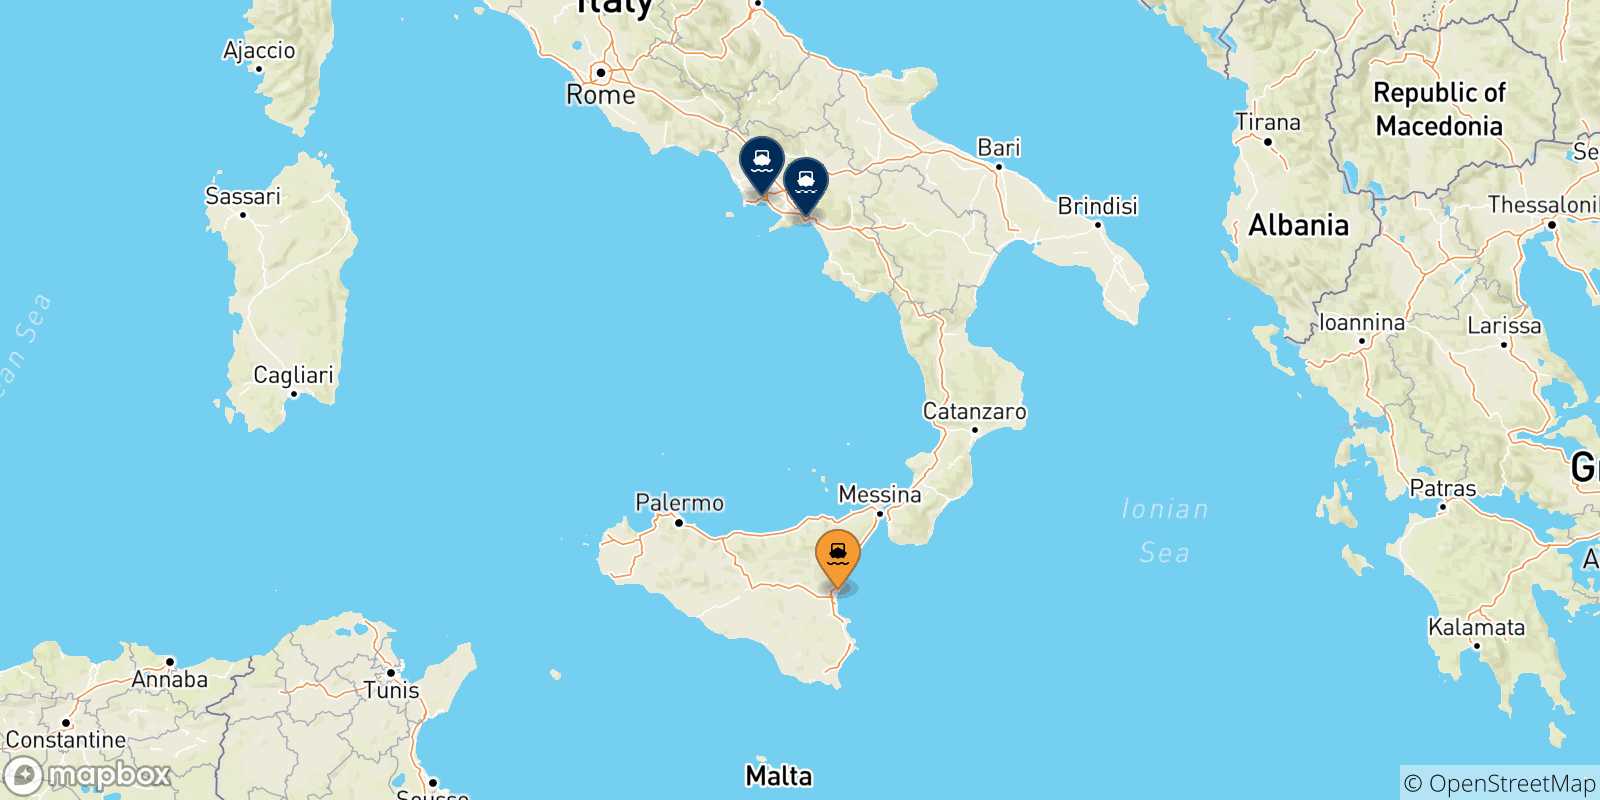 Mappa delle possibili rotte tra Catania e l'Italia